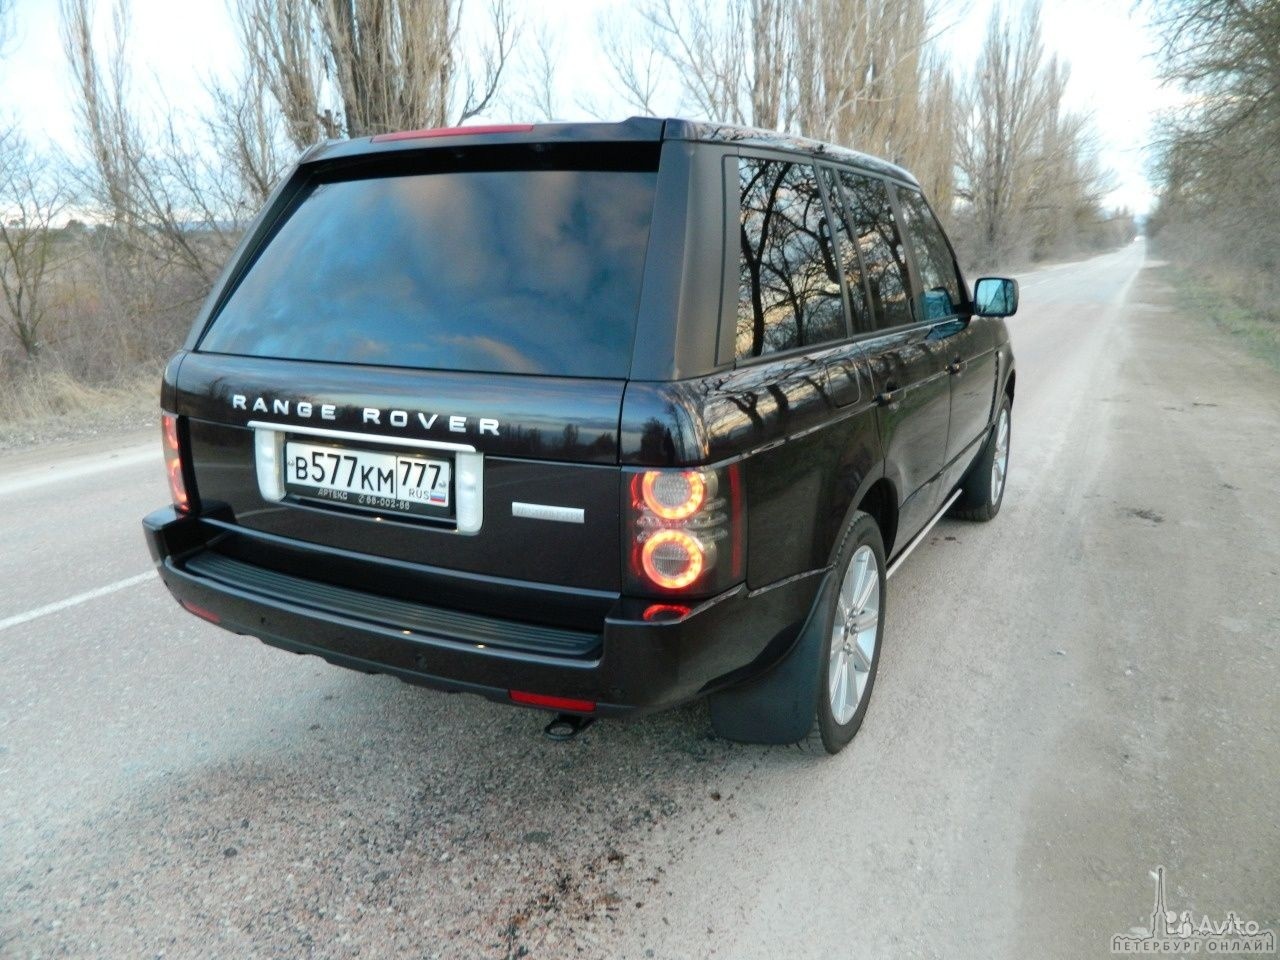 22 ноября в 23:20 в Невском районе у дома 53 к.2 по Народной улице был угнан автомобиль Range Rover ...